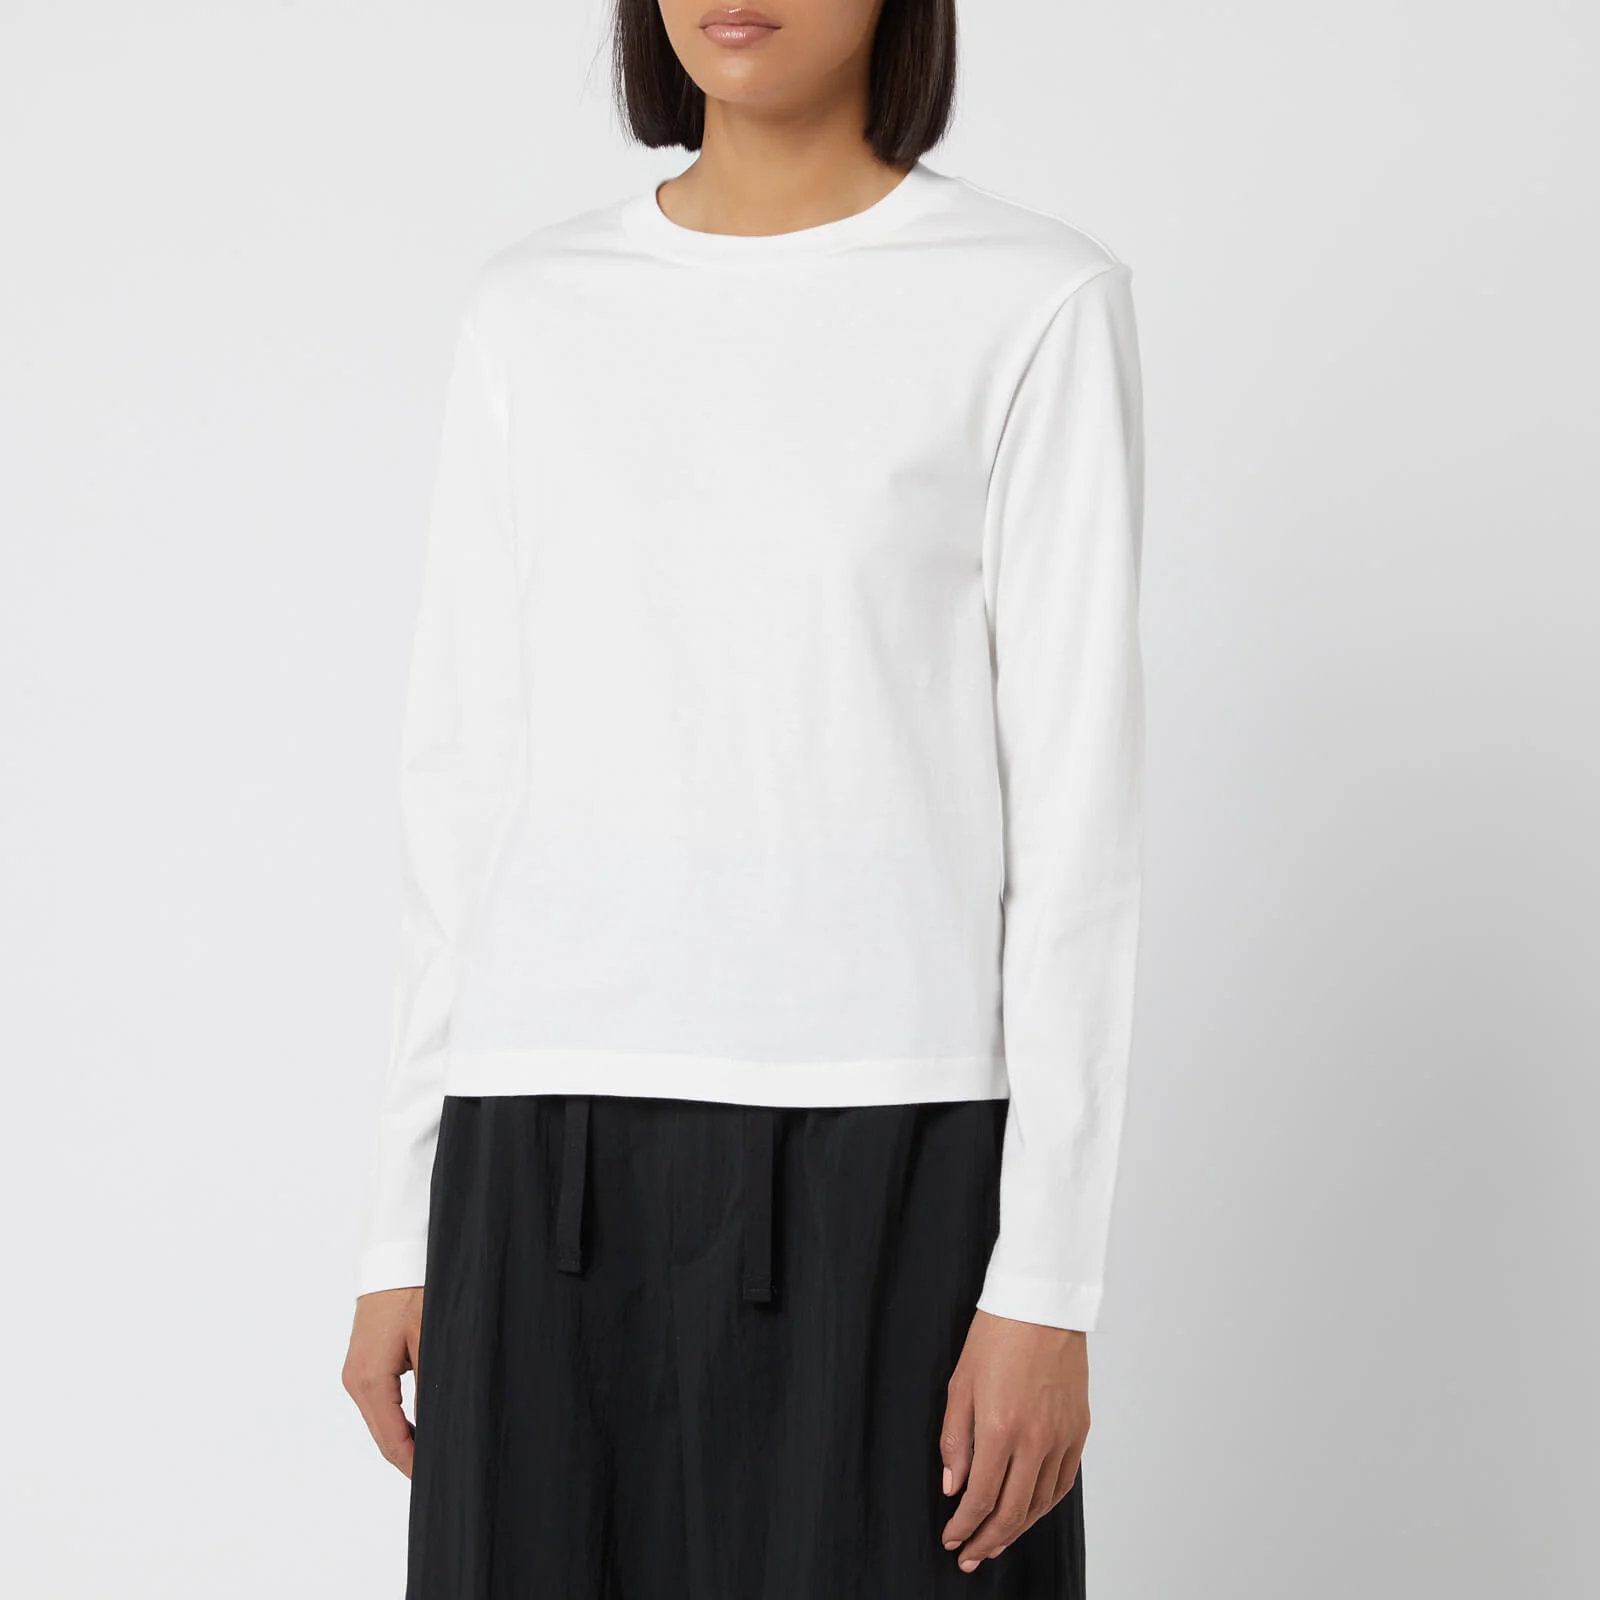 Y-3 Women's Yohji Love Tubular Long Sleeve T-Shirt - Core White Image 1